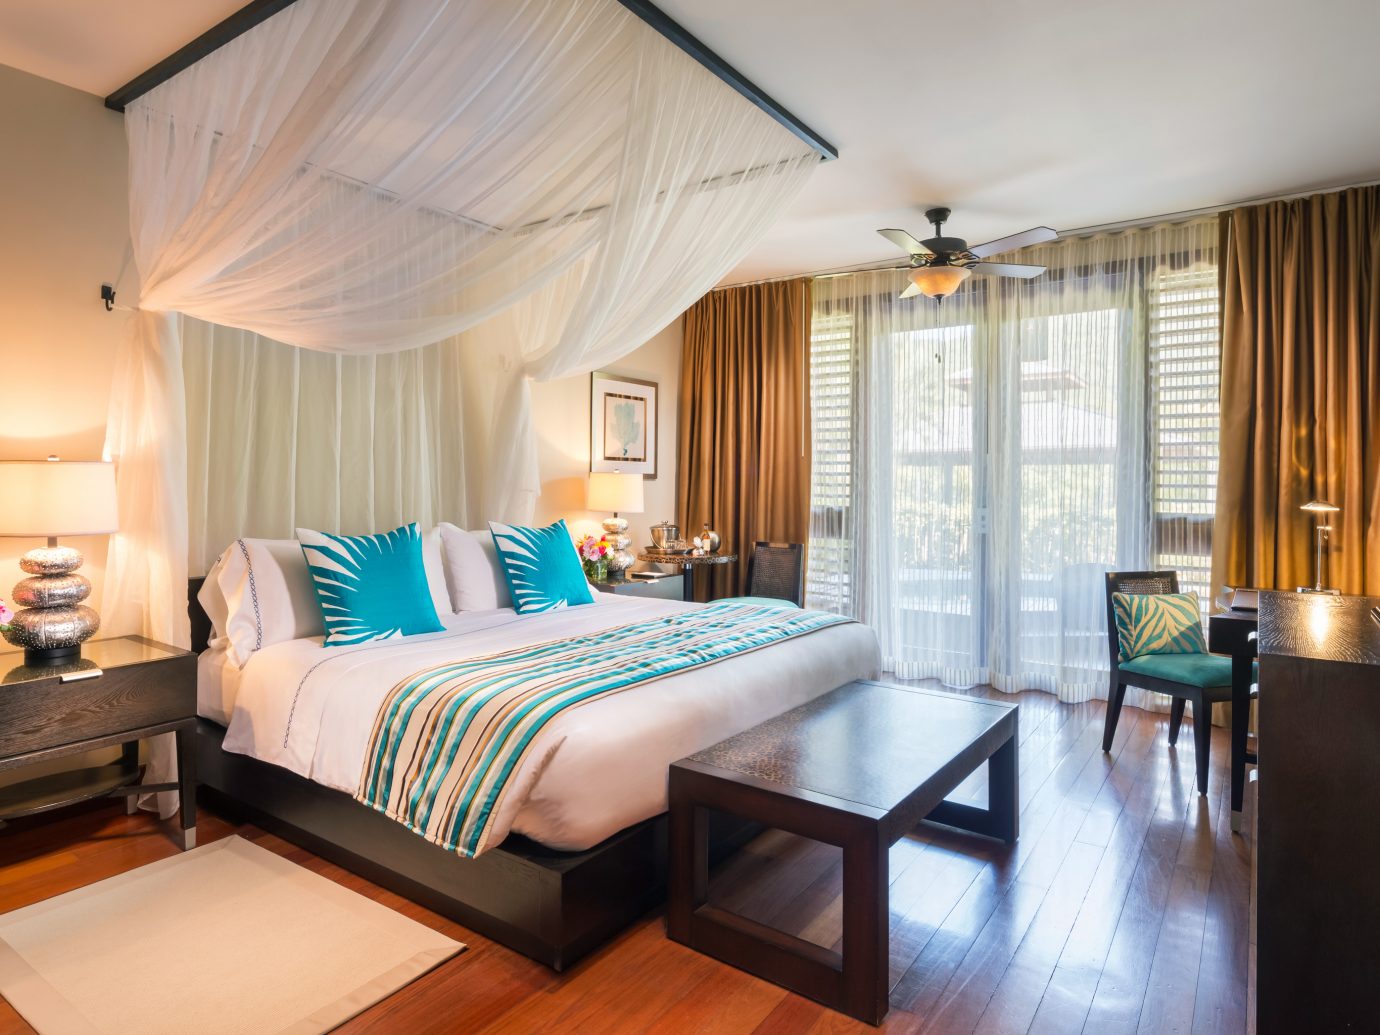 Bedroom at Marigot Bay Resort & Marina